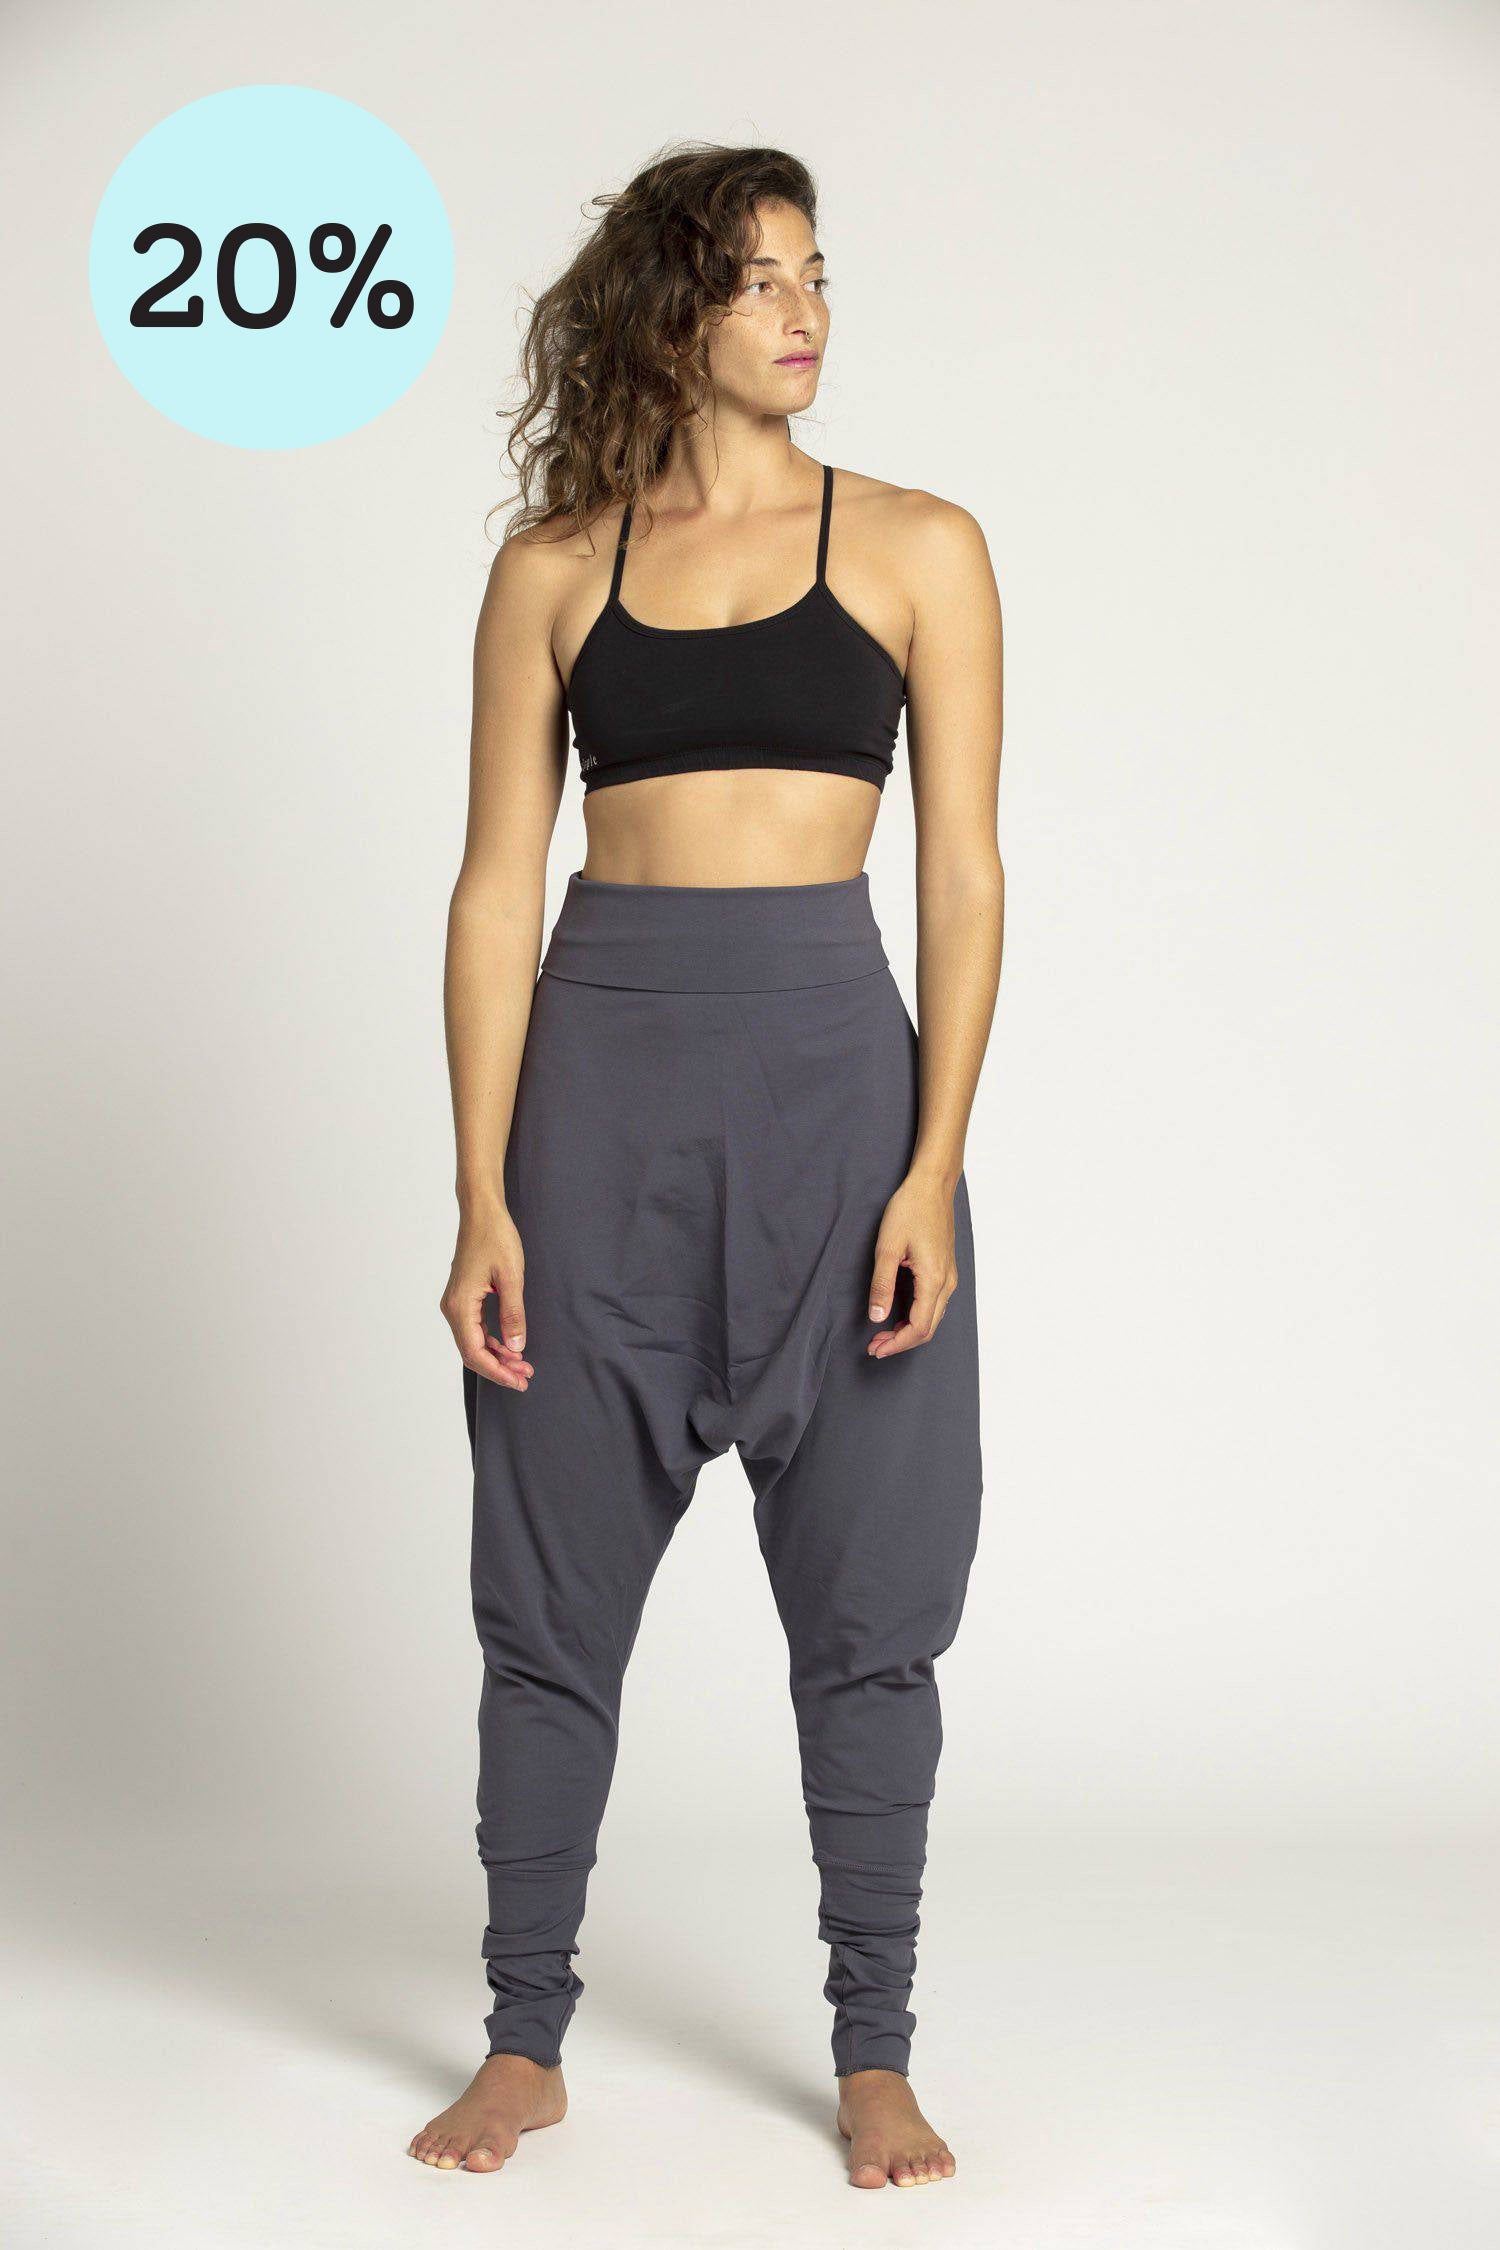 Alexia Harem trousers / Pants 8-20 | Susie's Boutique